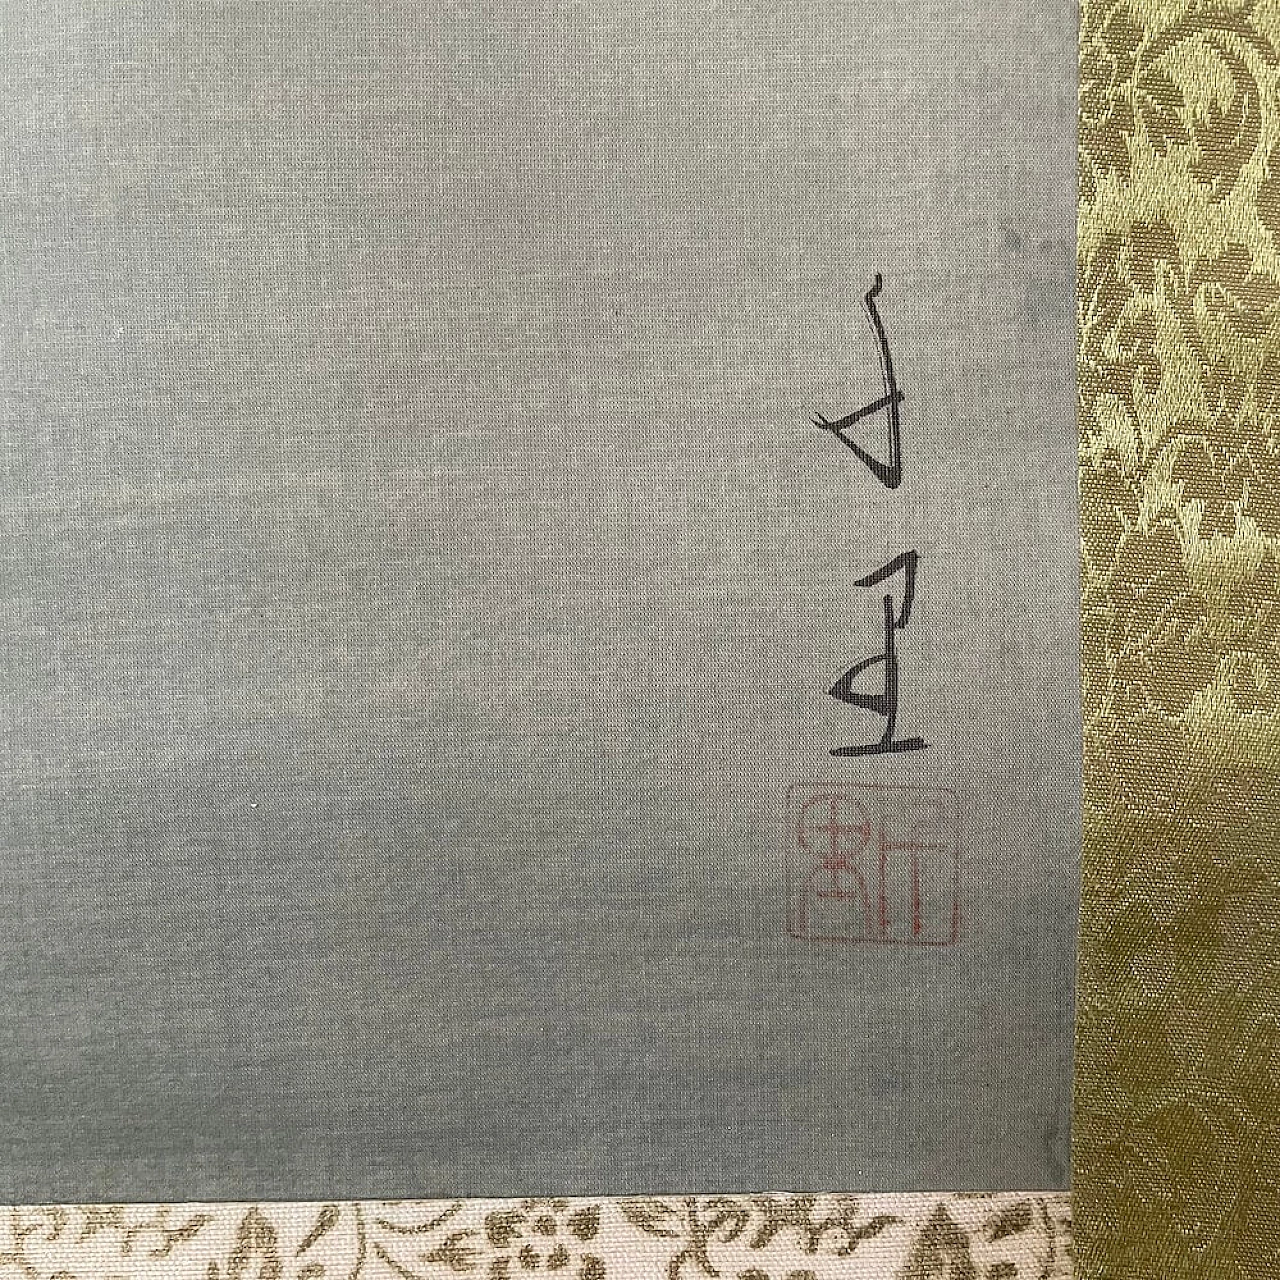 Japanese painting on silk with Koi carp, 1940s 1402961